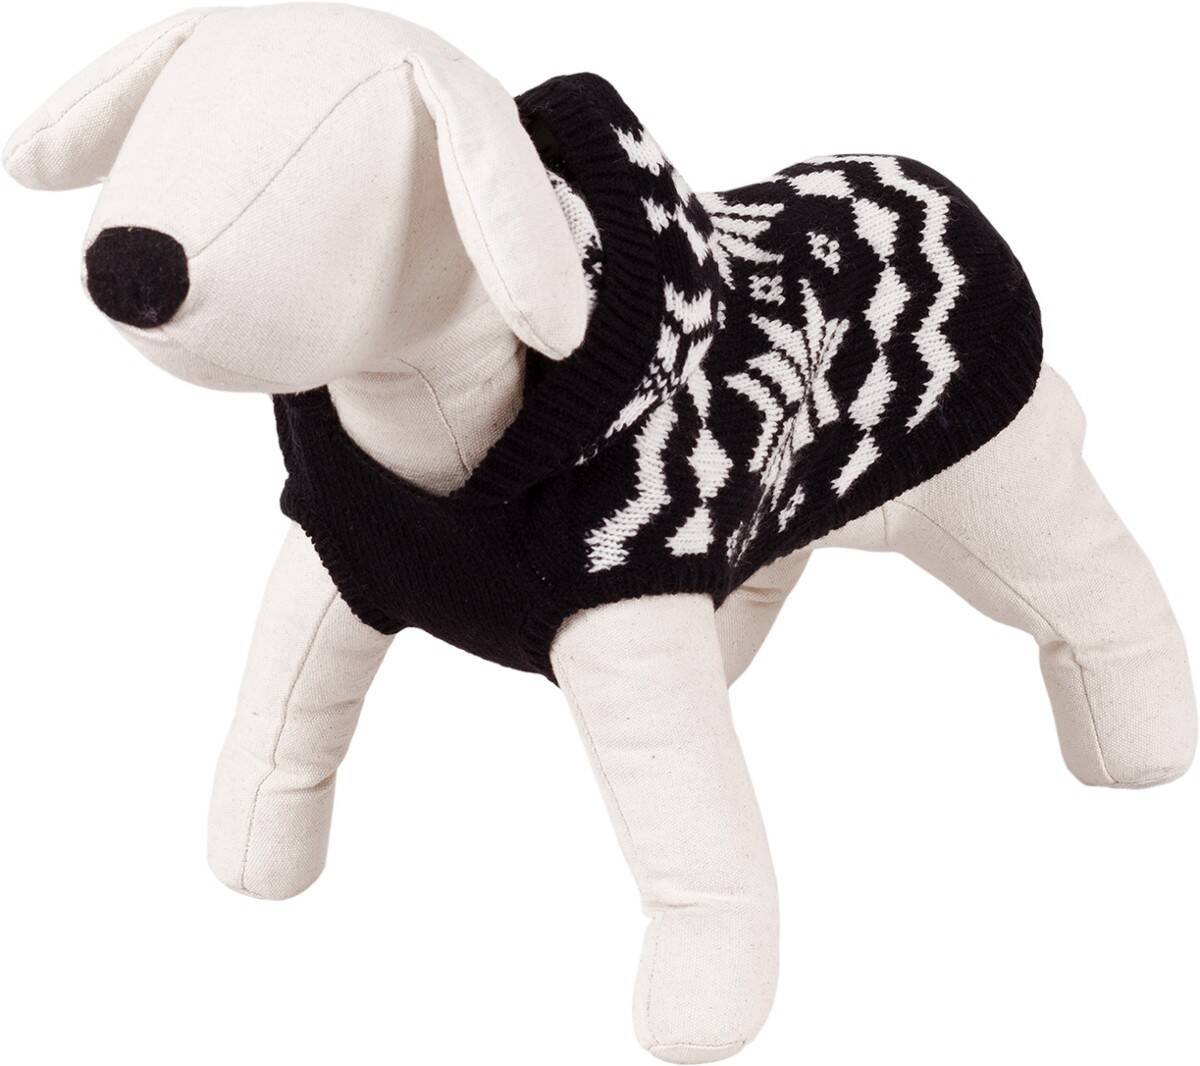 Pullover mit Kapuze  für einen Hund der Größe XL Happet 45XL  XL-40cm (Z-45XLRH)